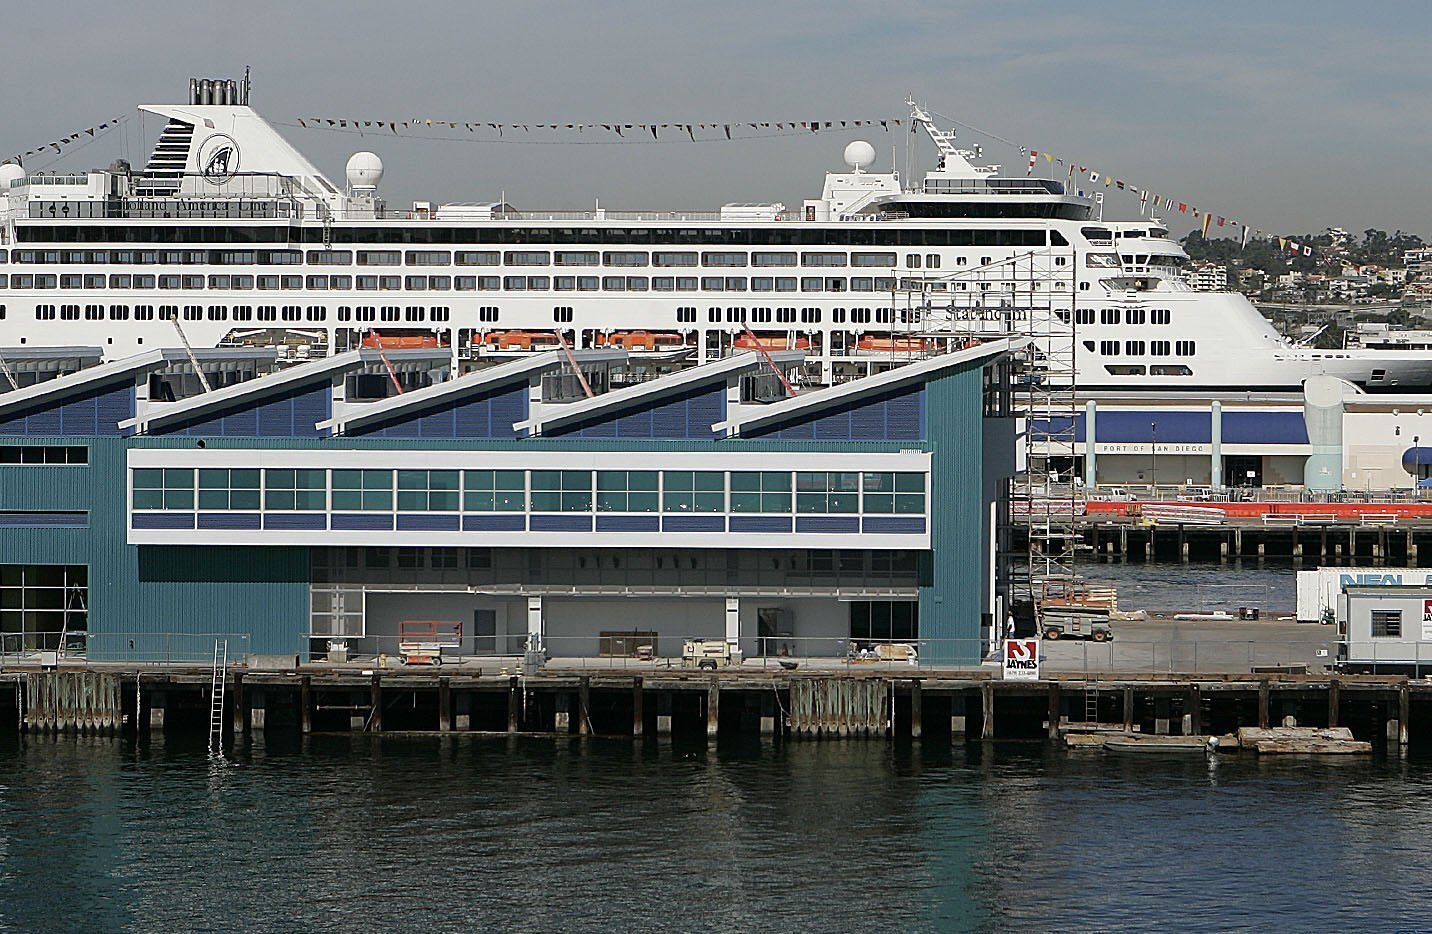 San Diego port to debut new cruise terminal - The San Diego Union-Tribune